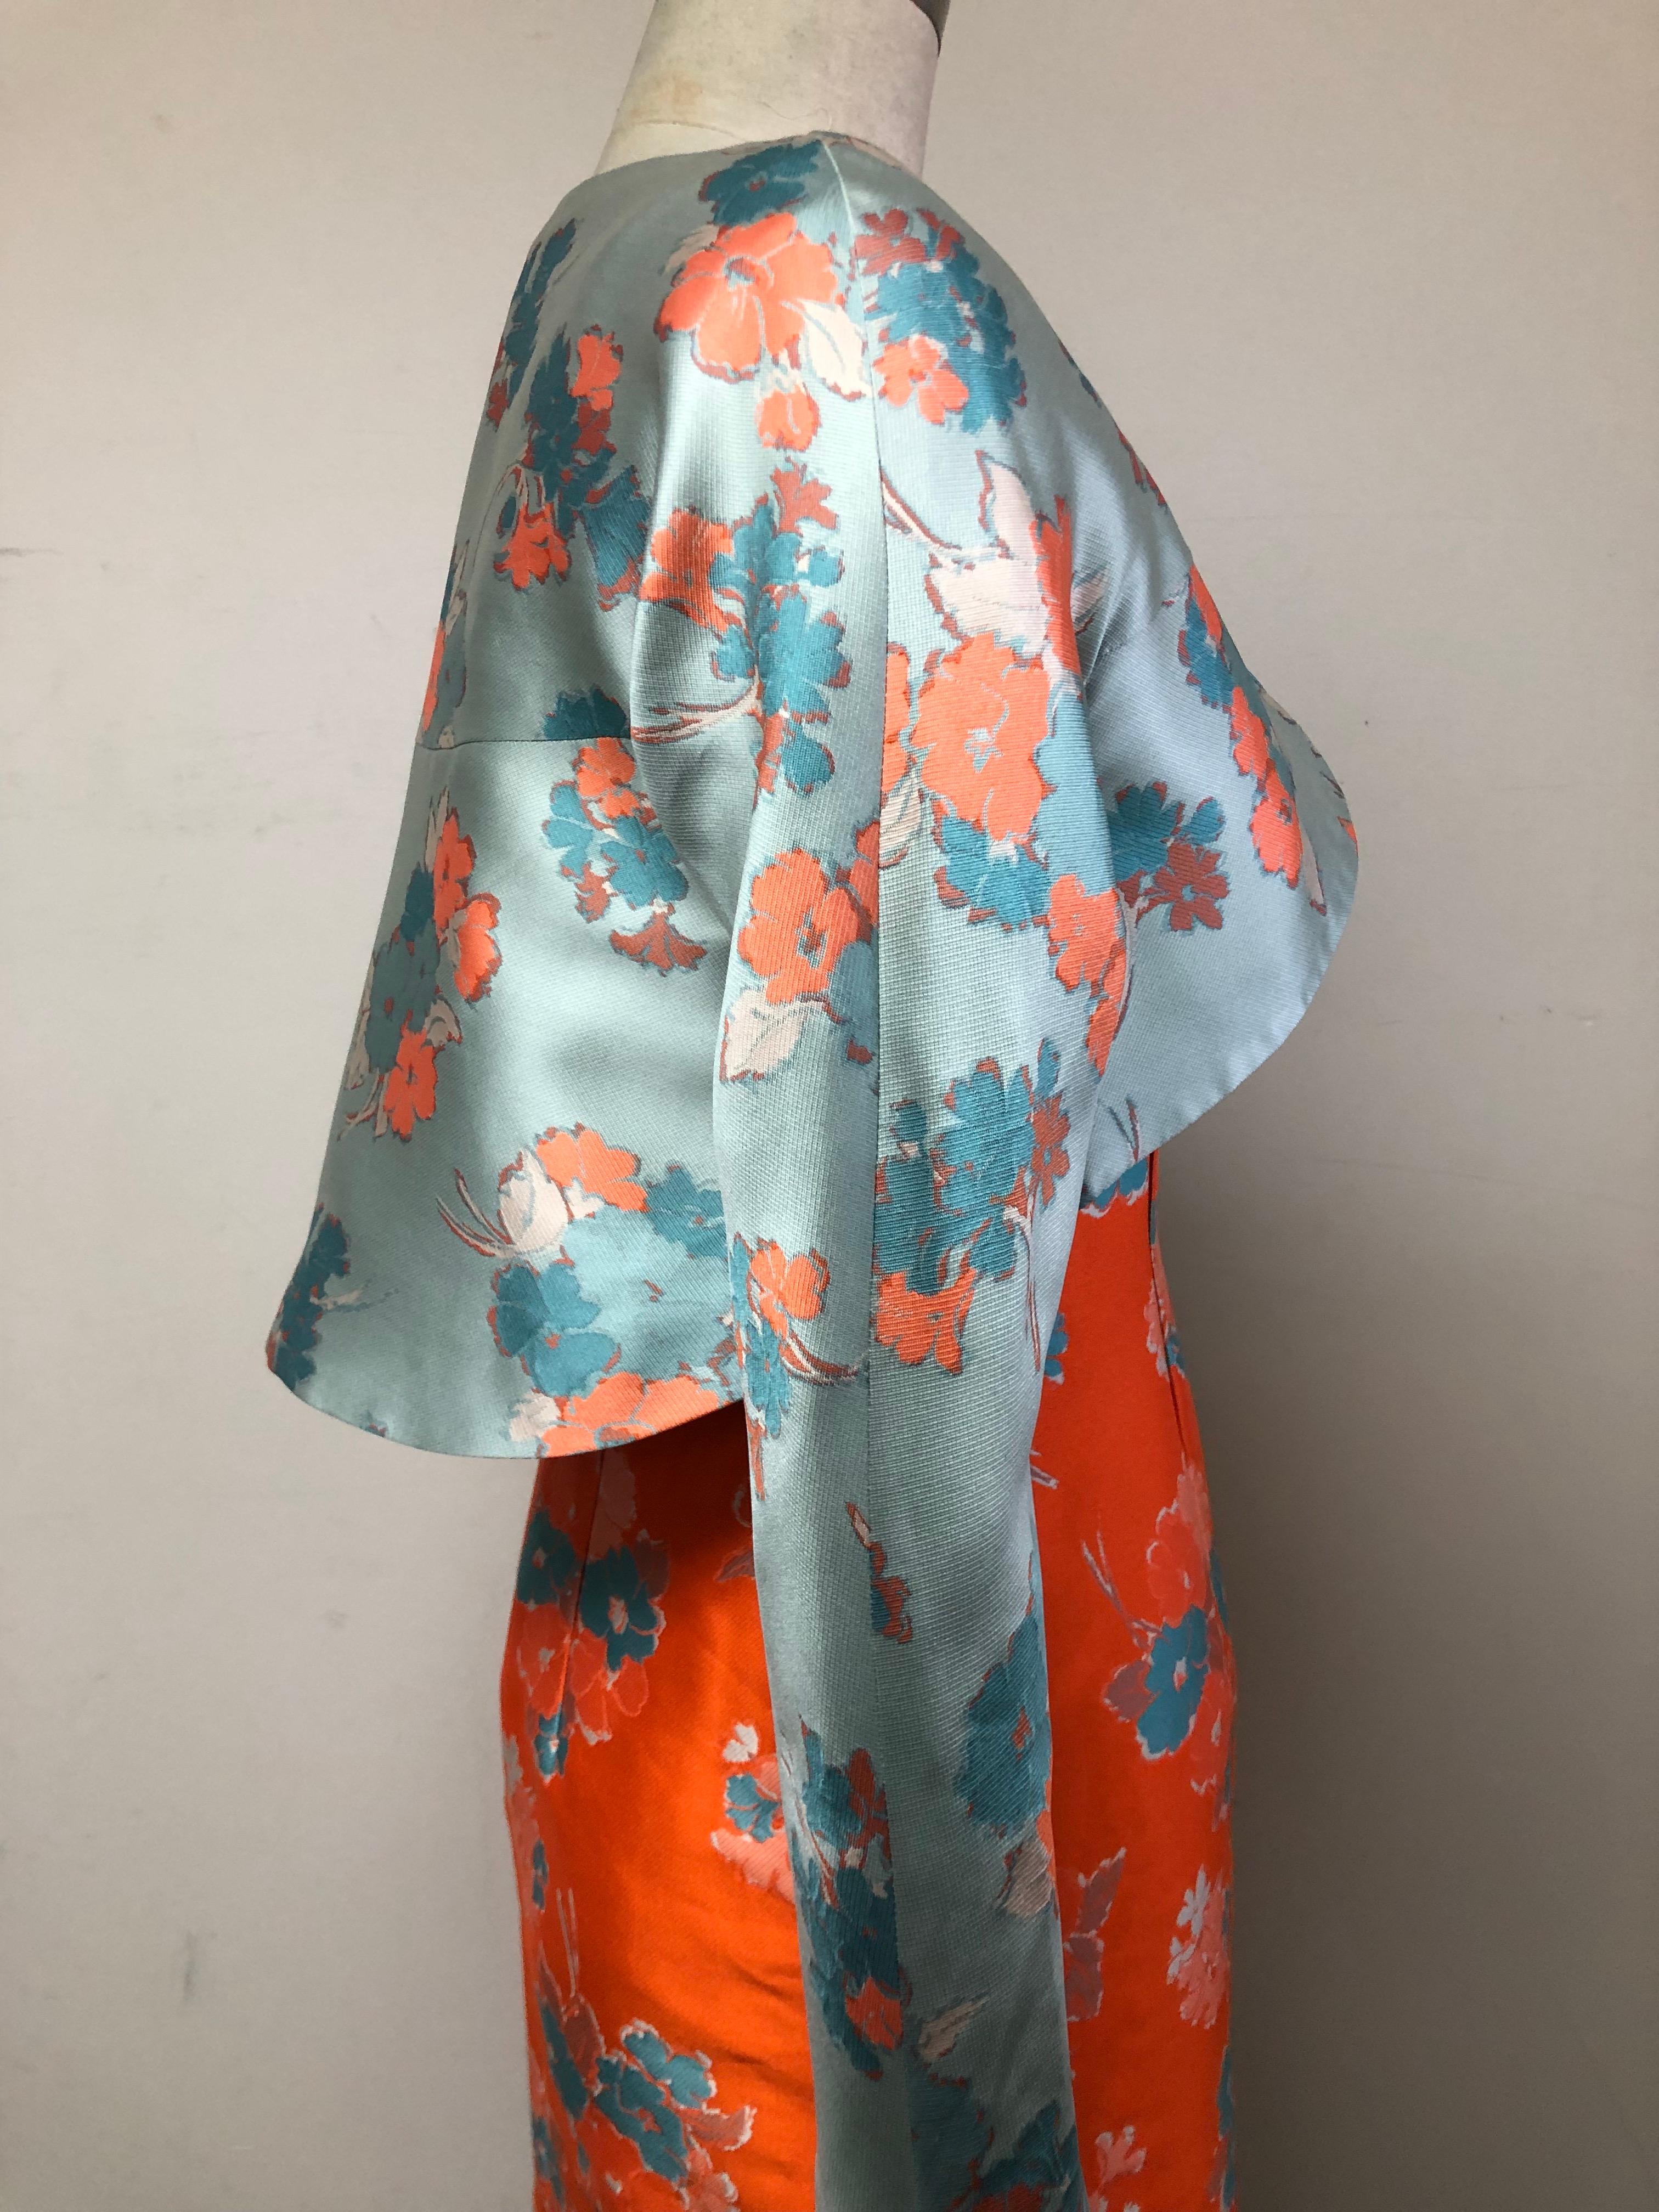 V Neck Slim Dress and Jacket in Delightful Orange and Blue Floral Print  For Sale 7